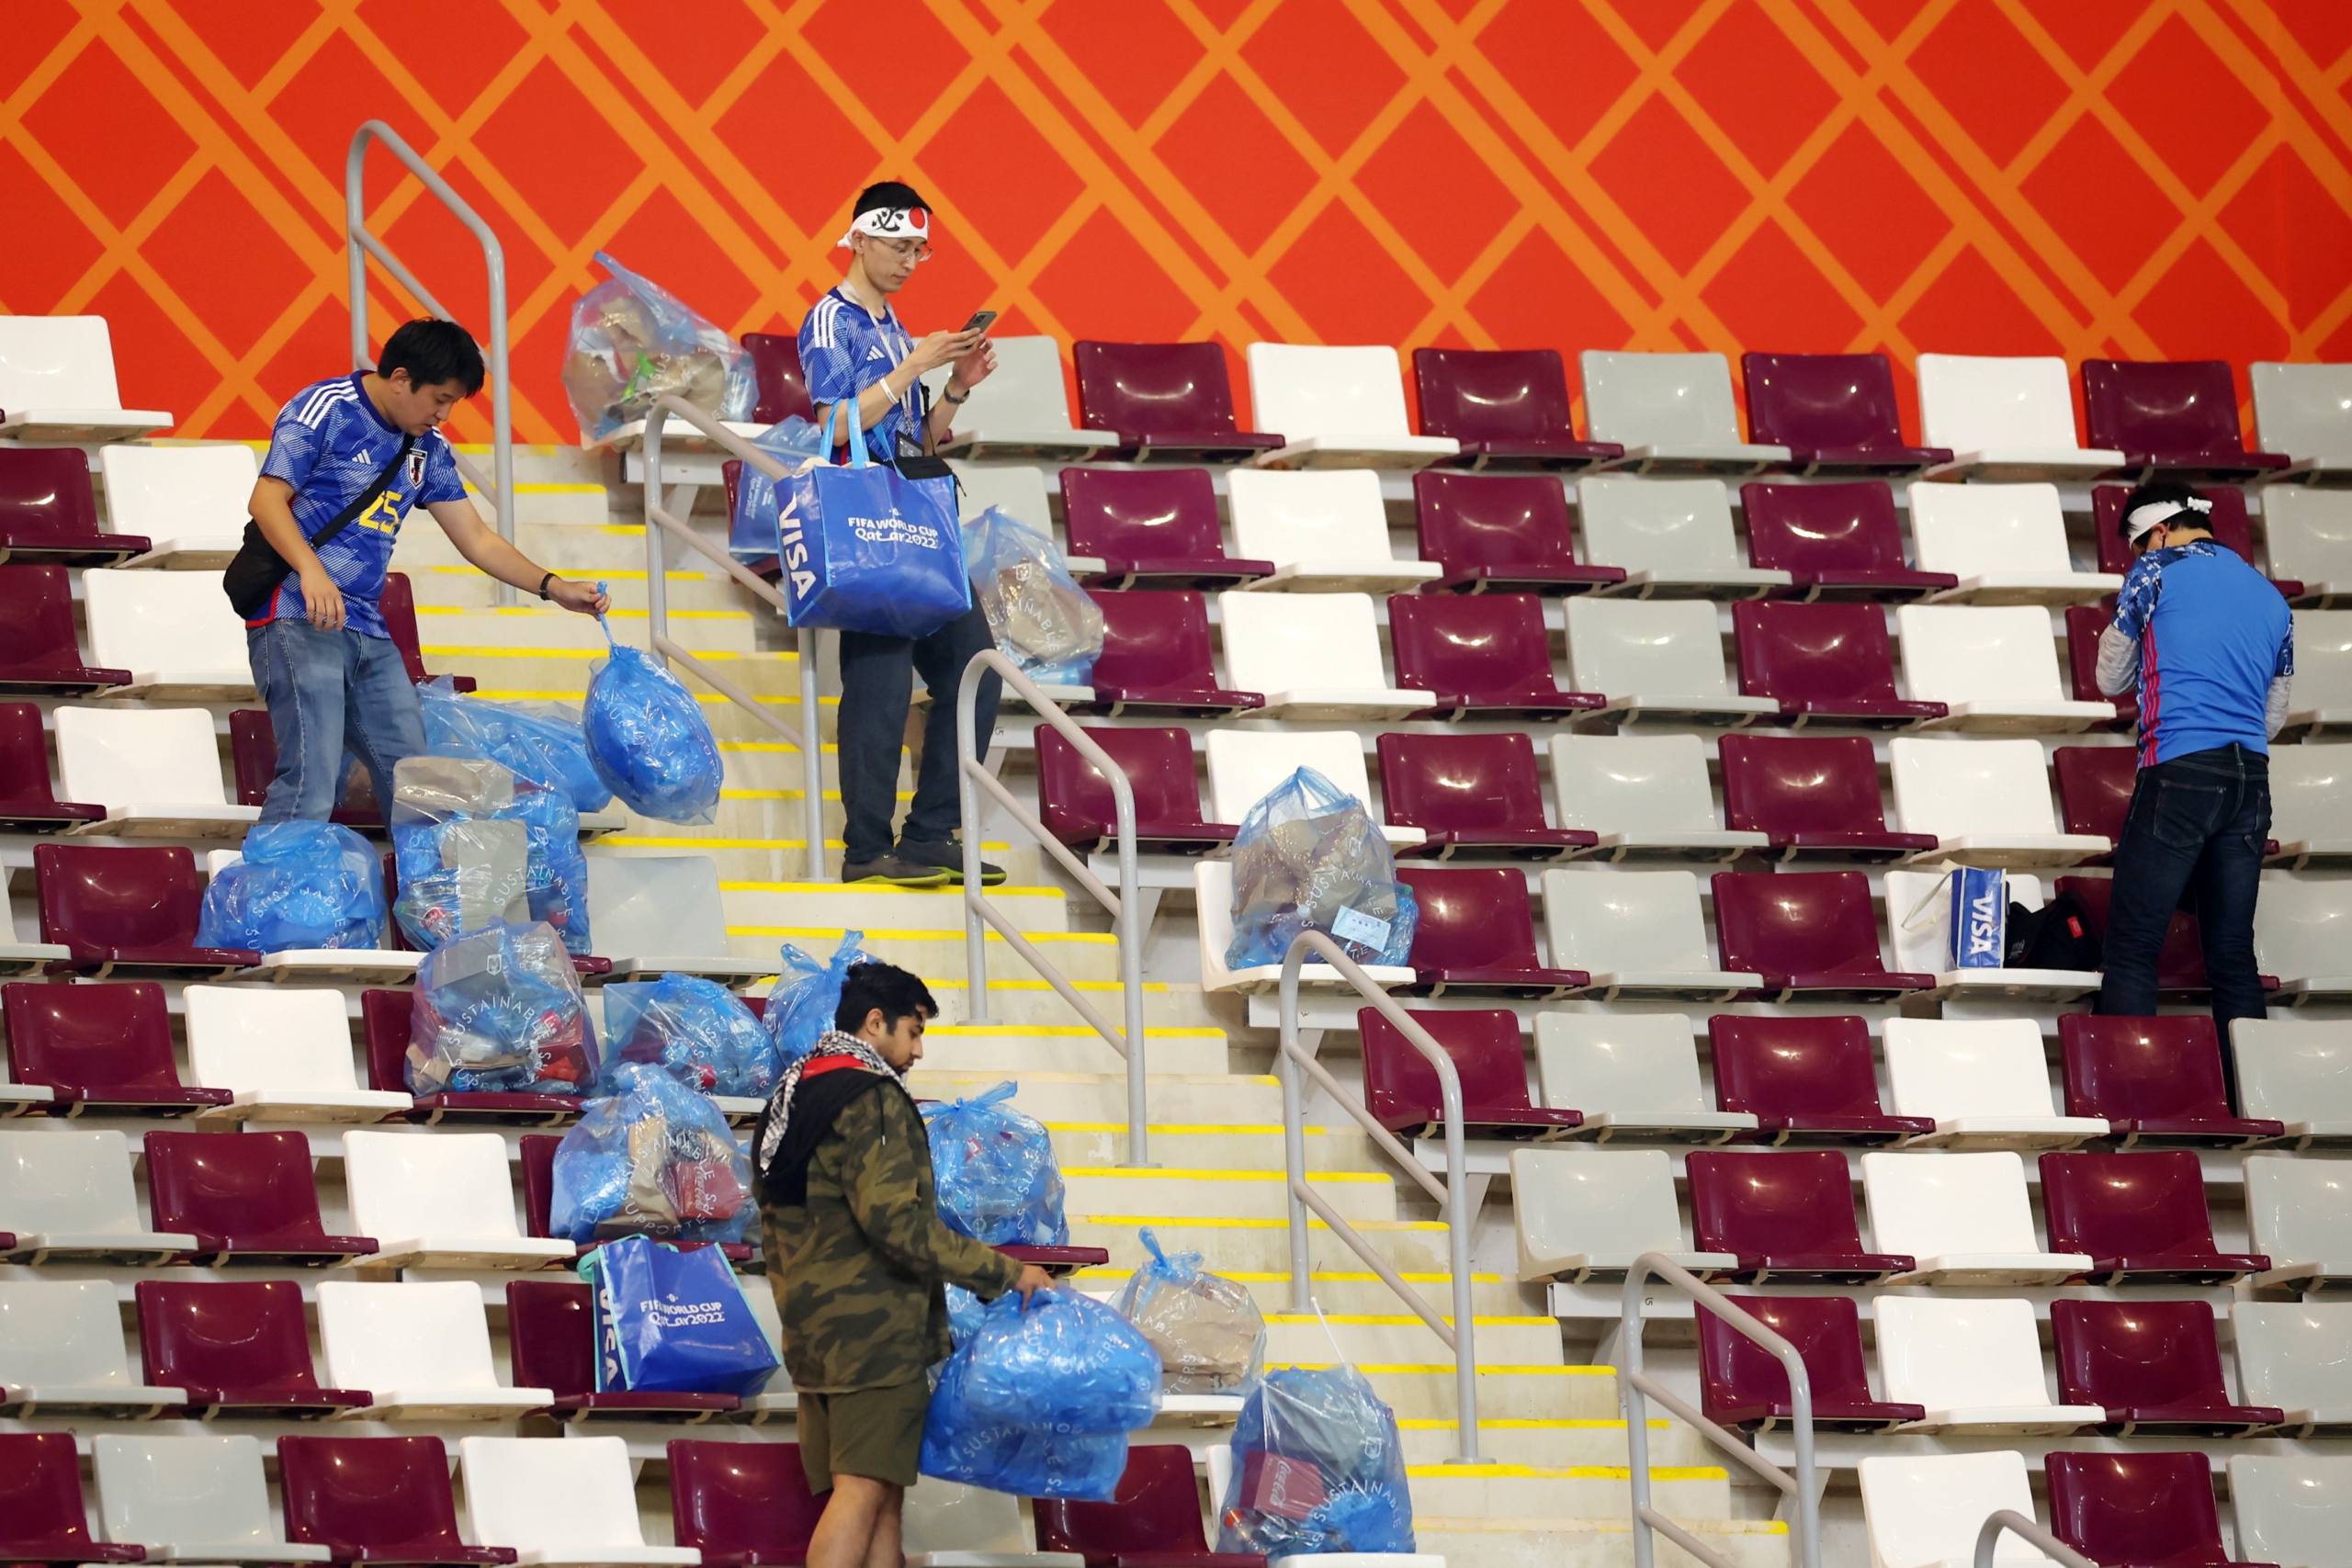 FOTO: Japonski navijači ponovno pomagali očistiti stadion po presunljivi zmagi Japonske nad Nemčijo